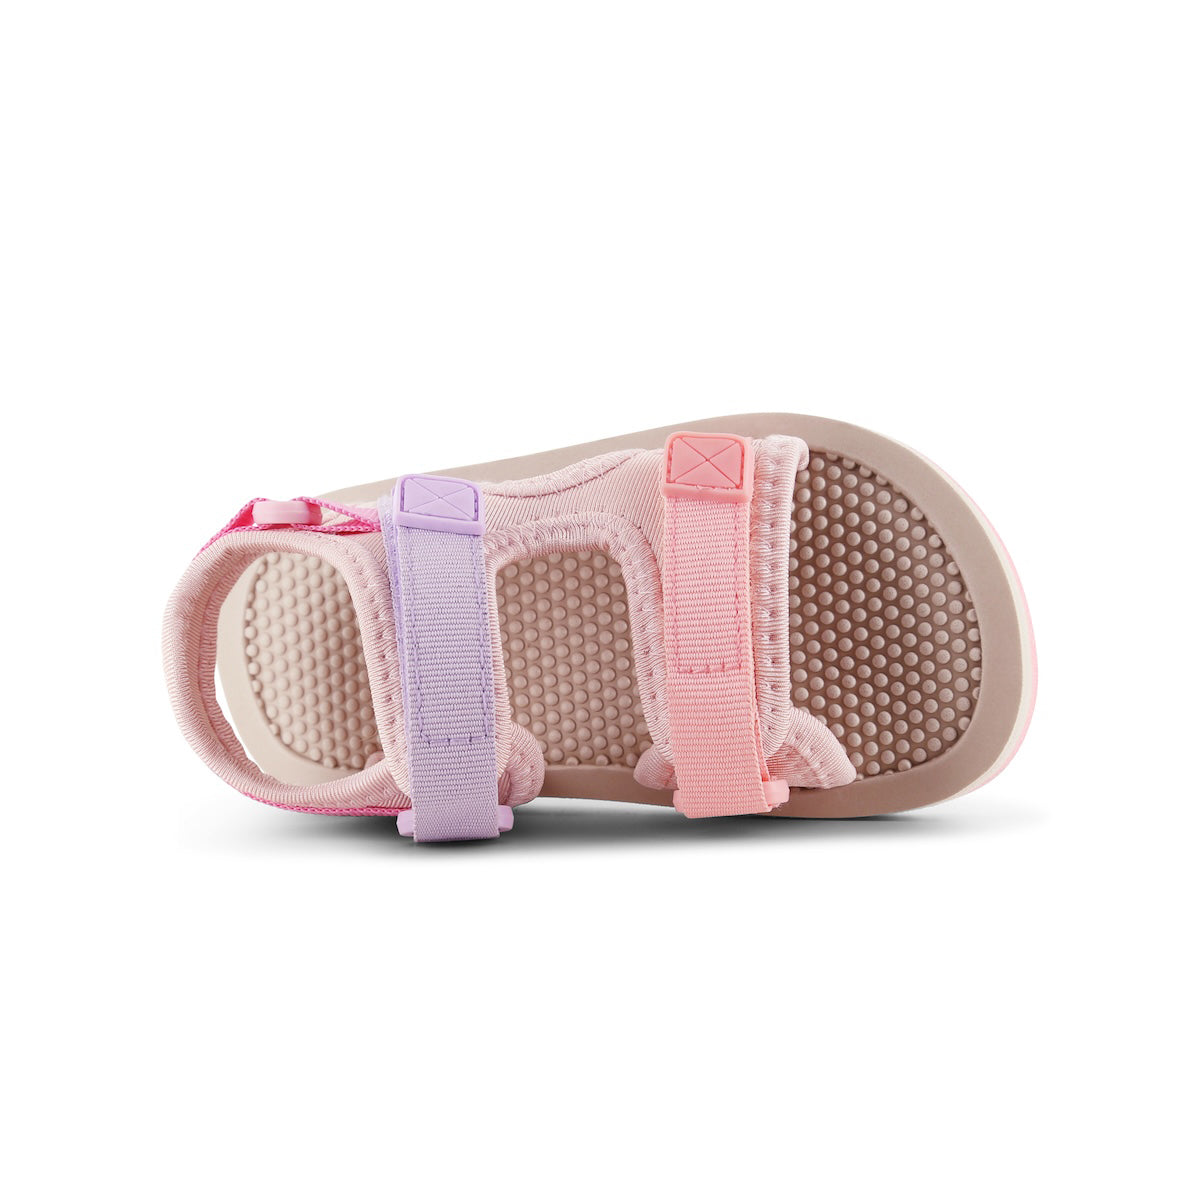 De Shoesme lichtgewicht sandaal pink lilac is extreem licht van gewicht. Deze zomerschoen is ideaal voor kinderen die al goed kunnen lopen. Met deze sandaaltjes kunnen ze de hele dag buiten spelen. VanZus.